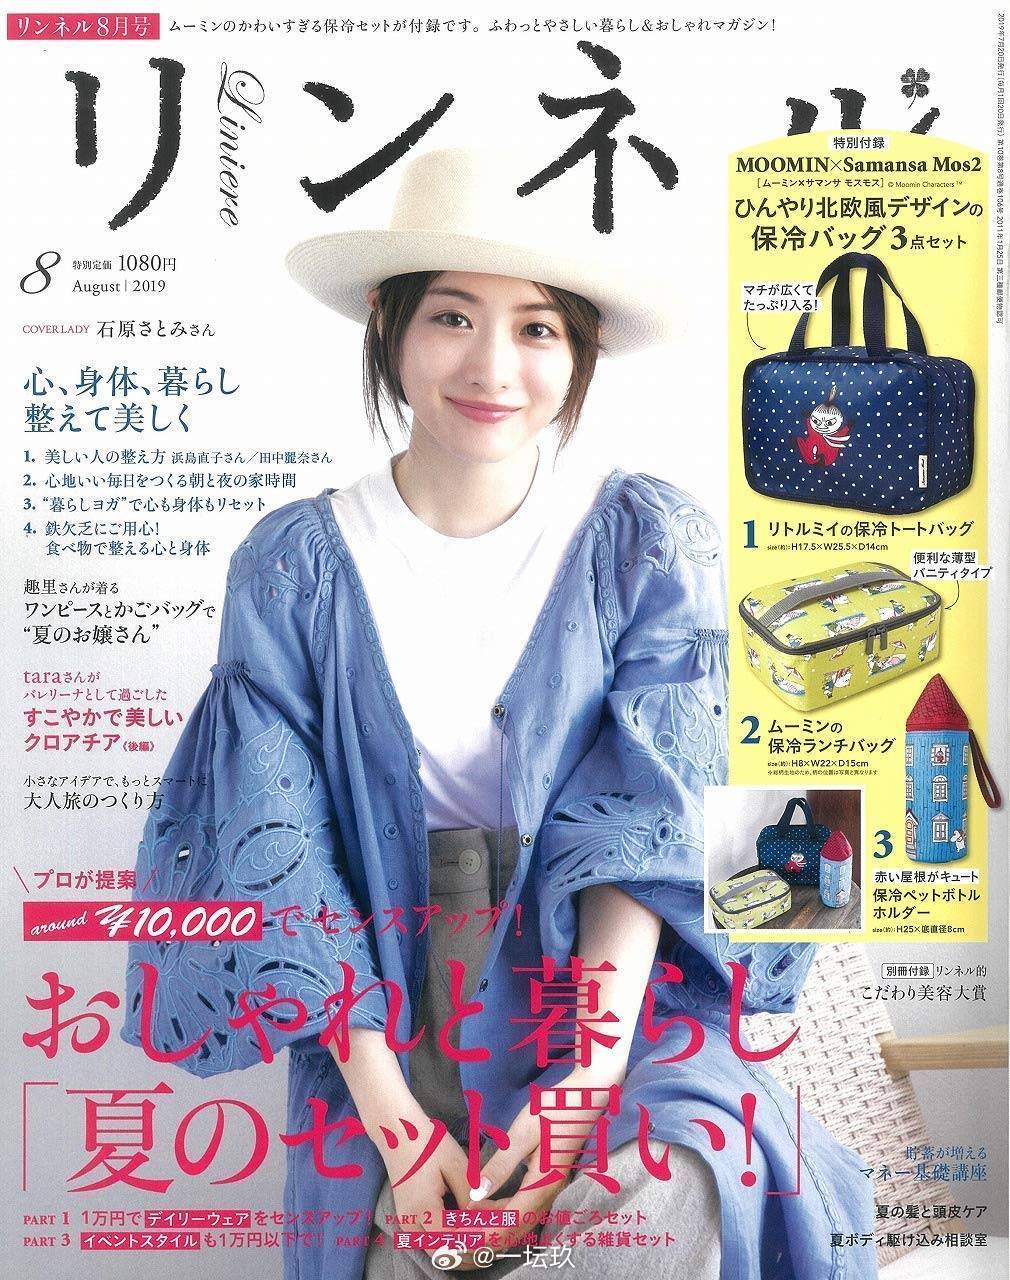 网友写道:这张杂志封面,好美好纯!石原里美是日本当红女星,她曾拍摄